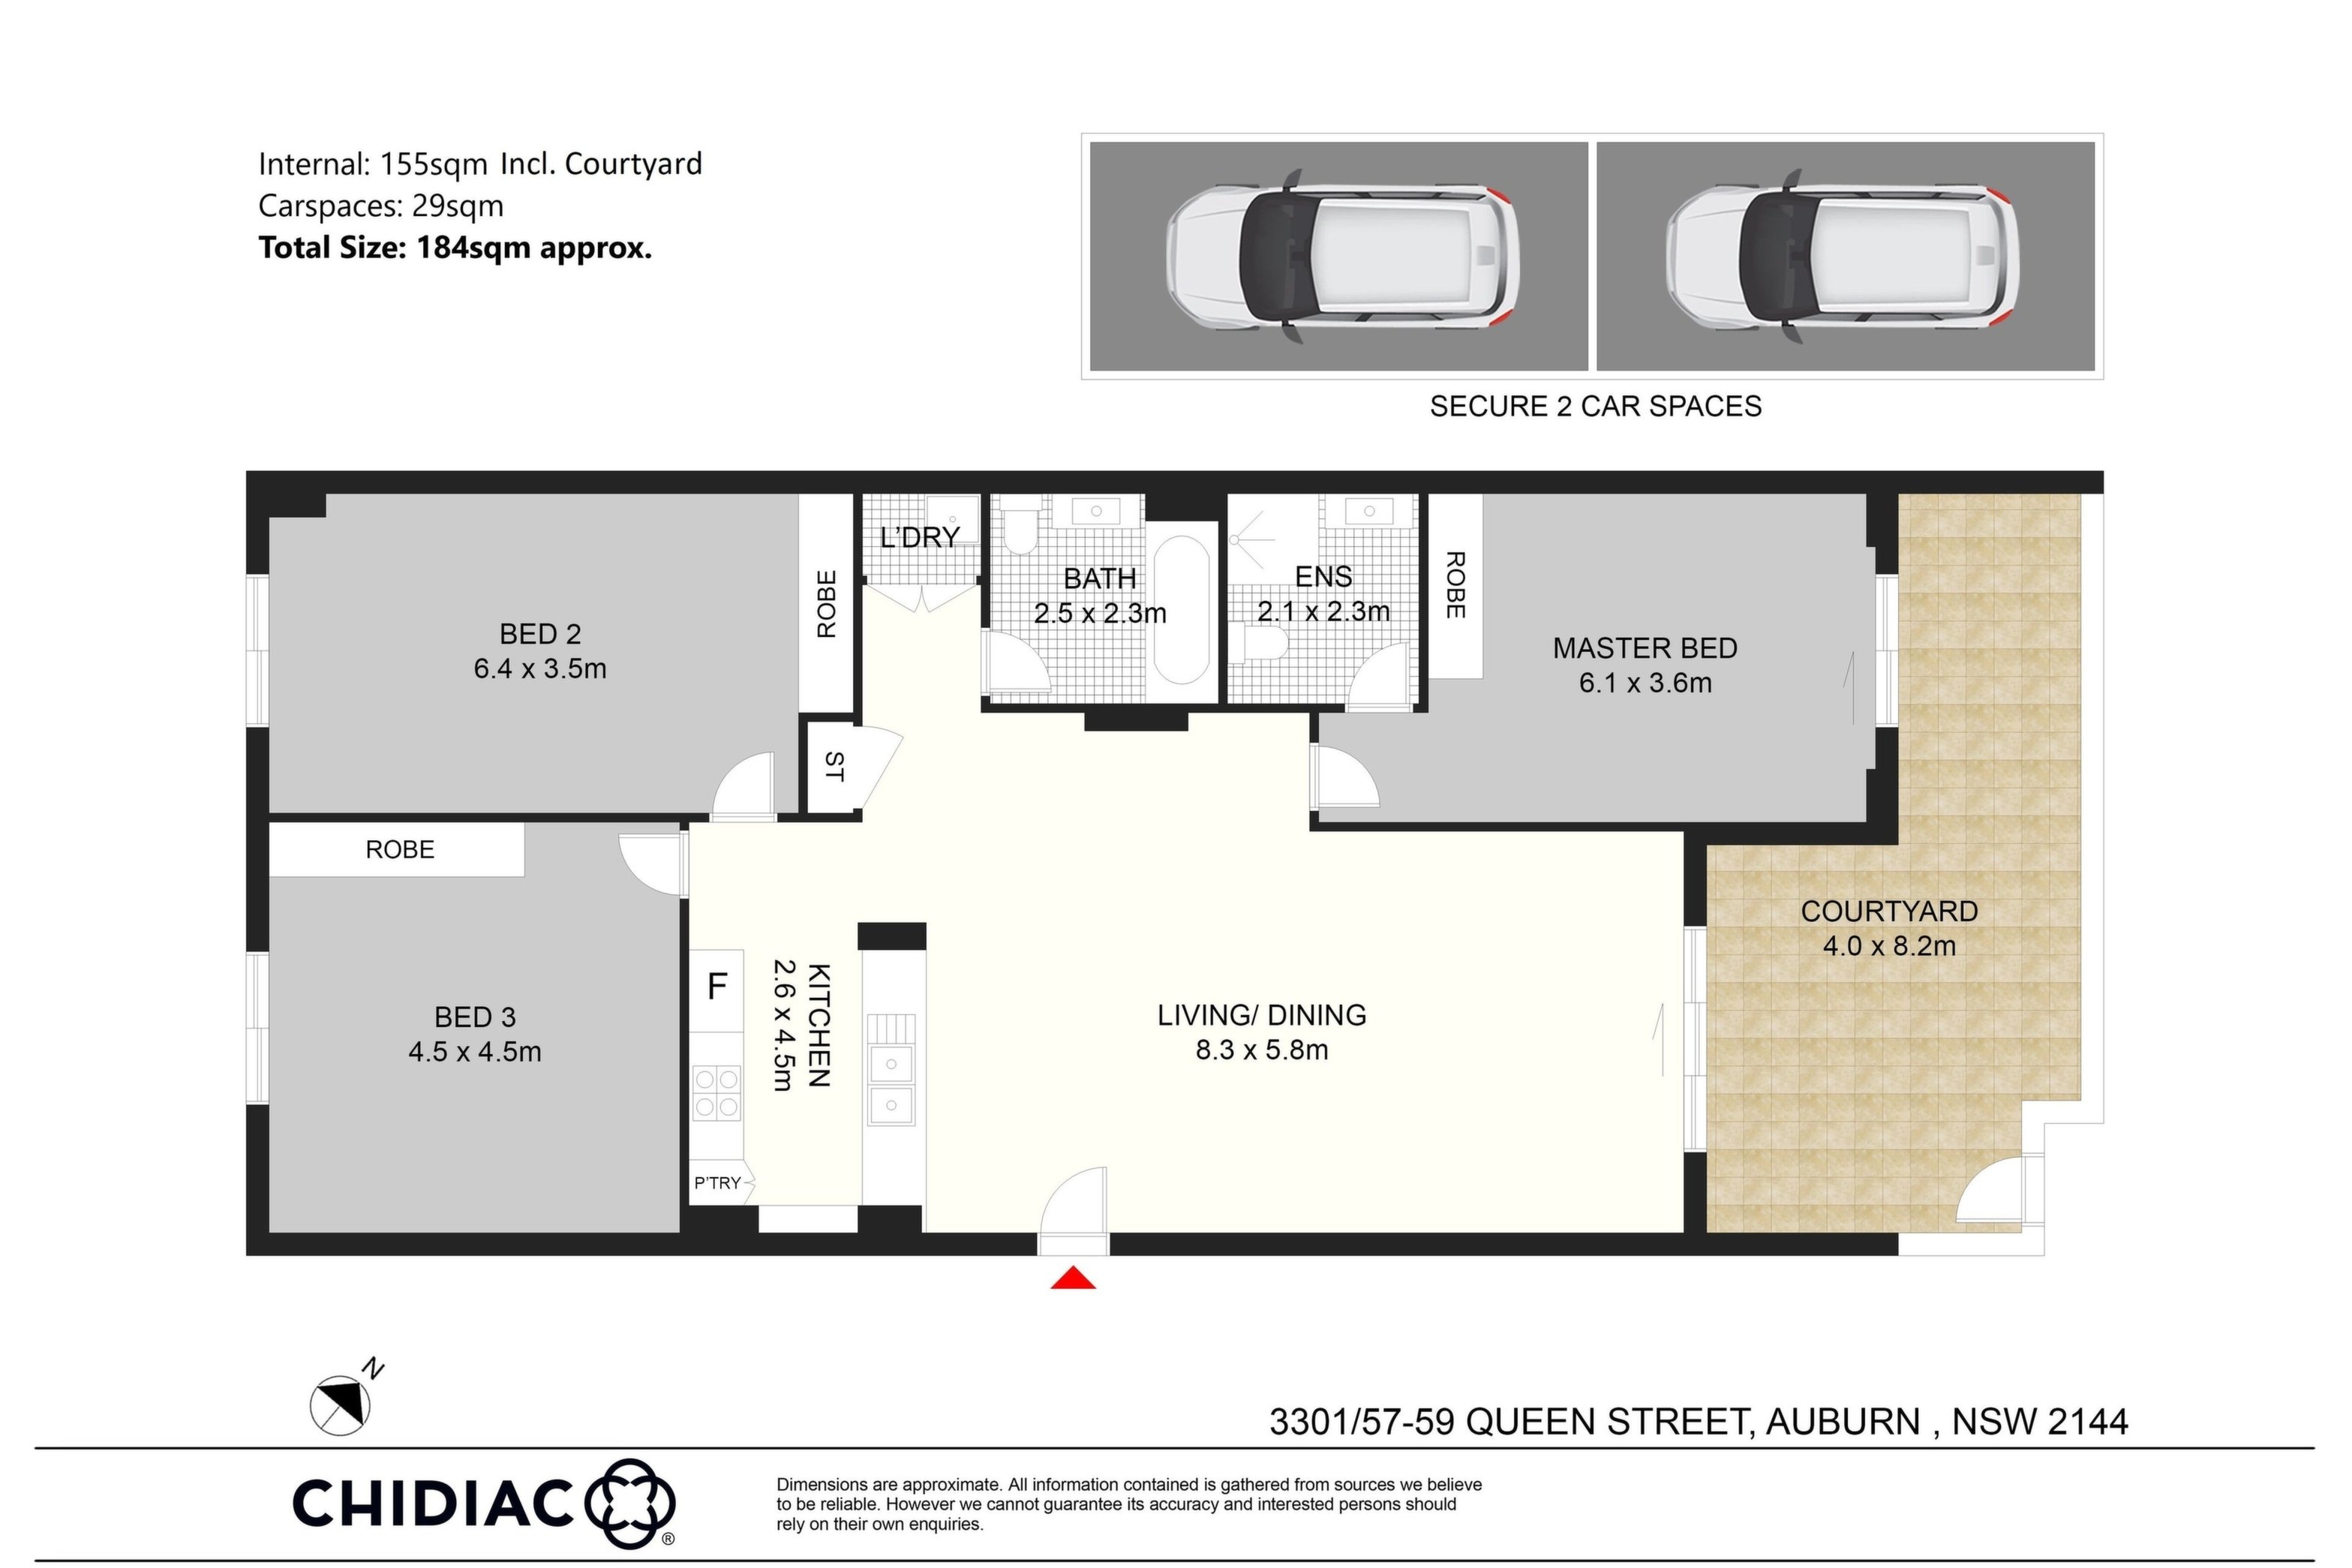 3301/57-59 Queen Street, Auburn Sold by Chidiac Realty - floorplan